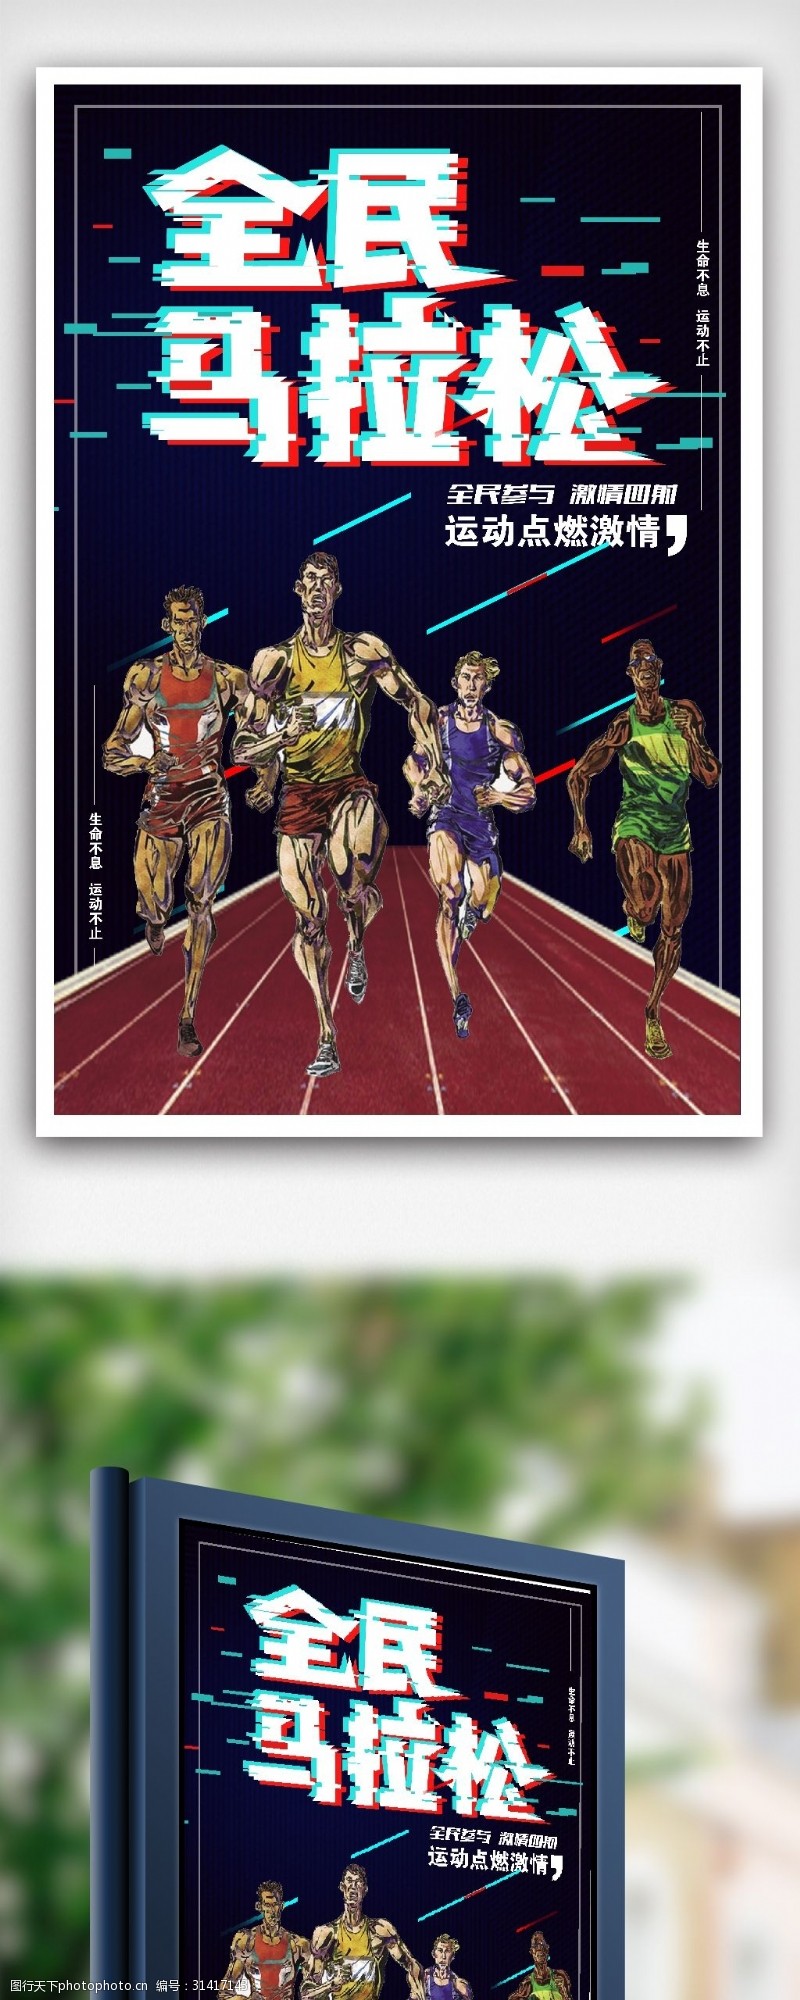 友谊赛最新流行马拉松运动比赛体育素材下载